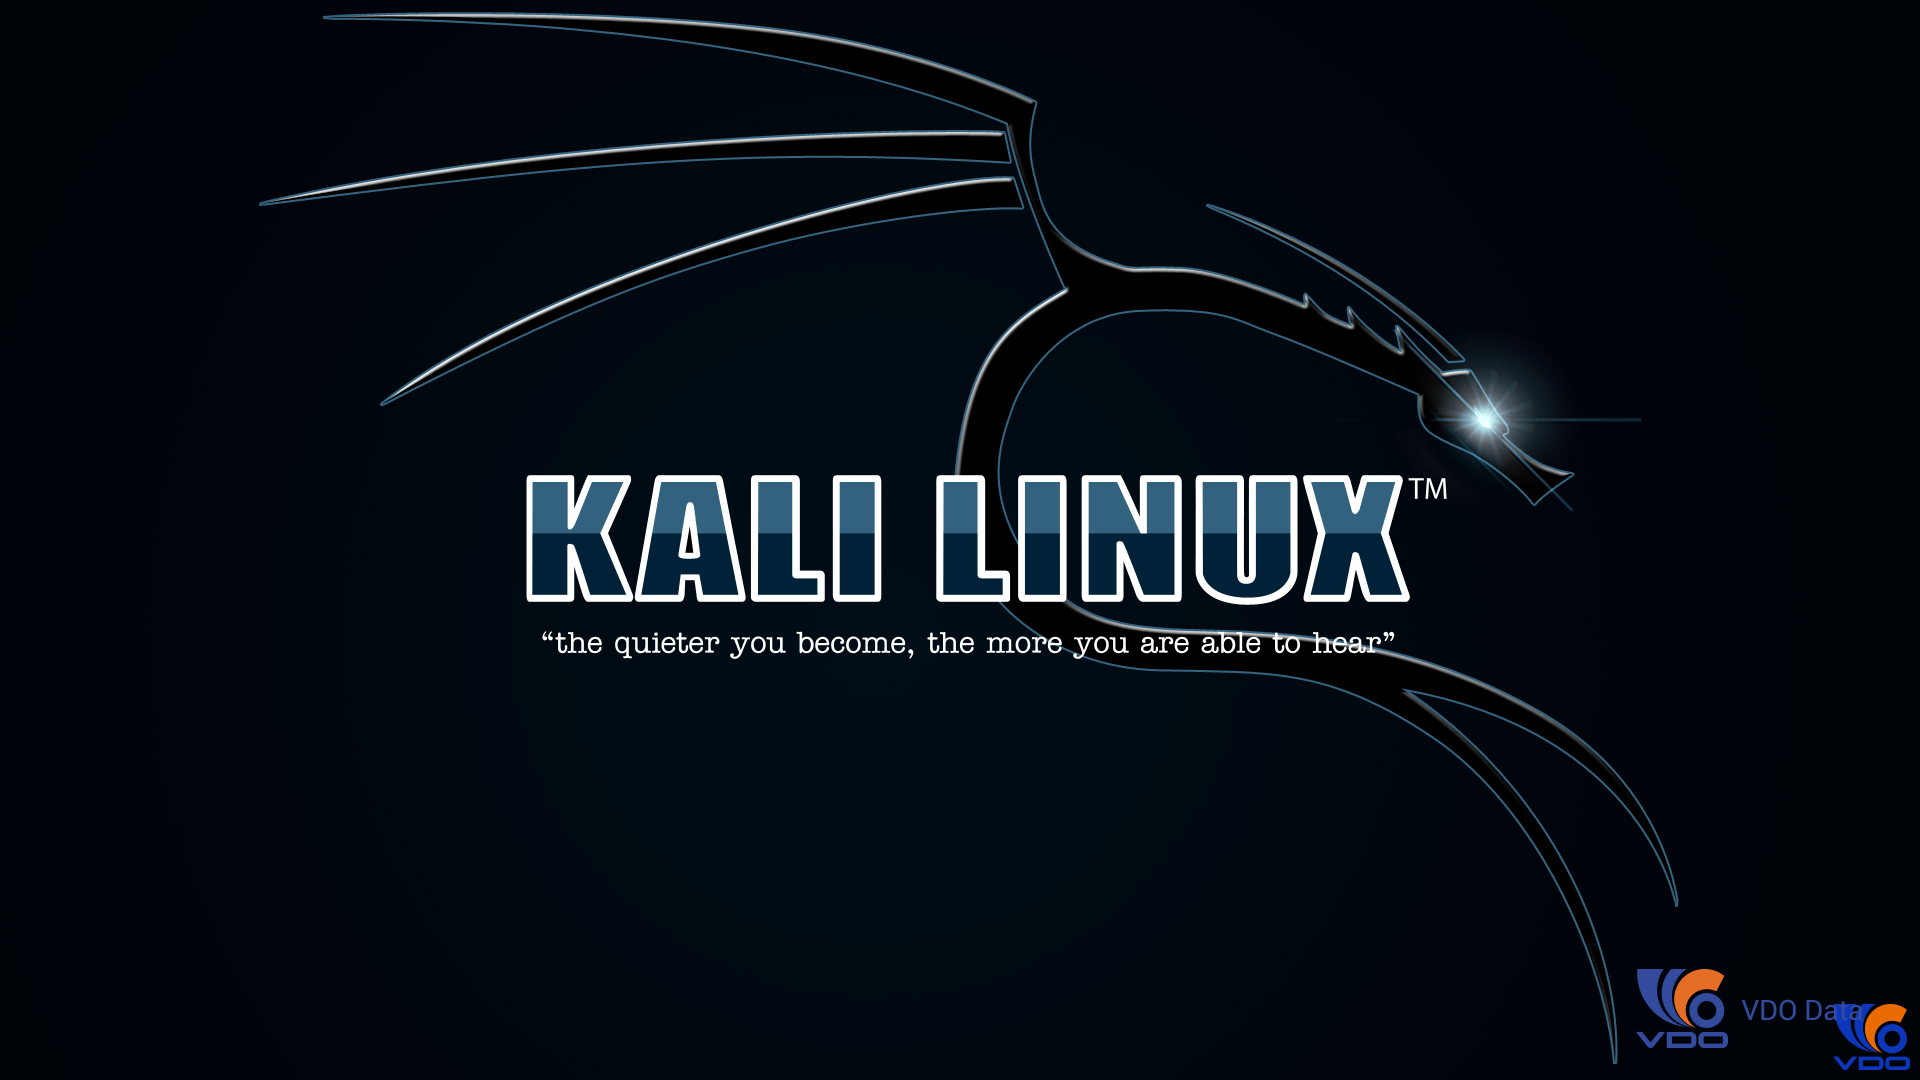 Hình nền  Anime Kali Linux NetHunter Linux Kali bóng tối Ảnh chụp màn  hình Hình nền máy tính Nhân vật hư cấu phông chữ 2181x933  Francazo   136872  Hình nền đẹp hd  WallHere